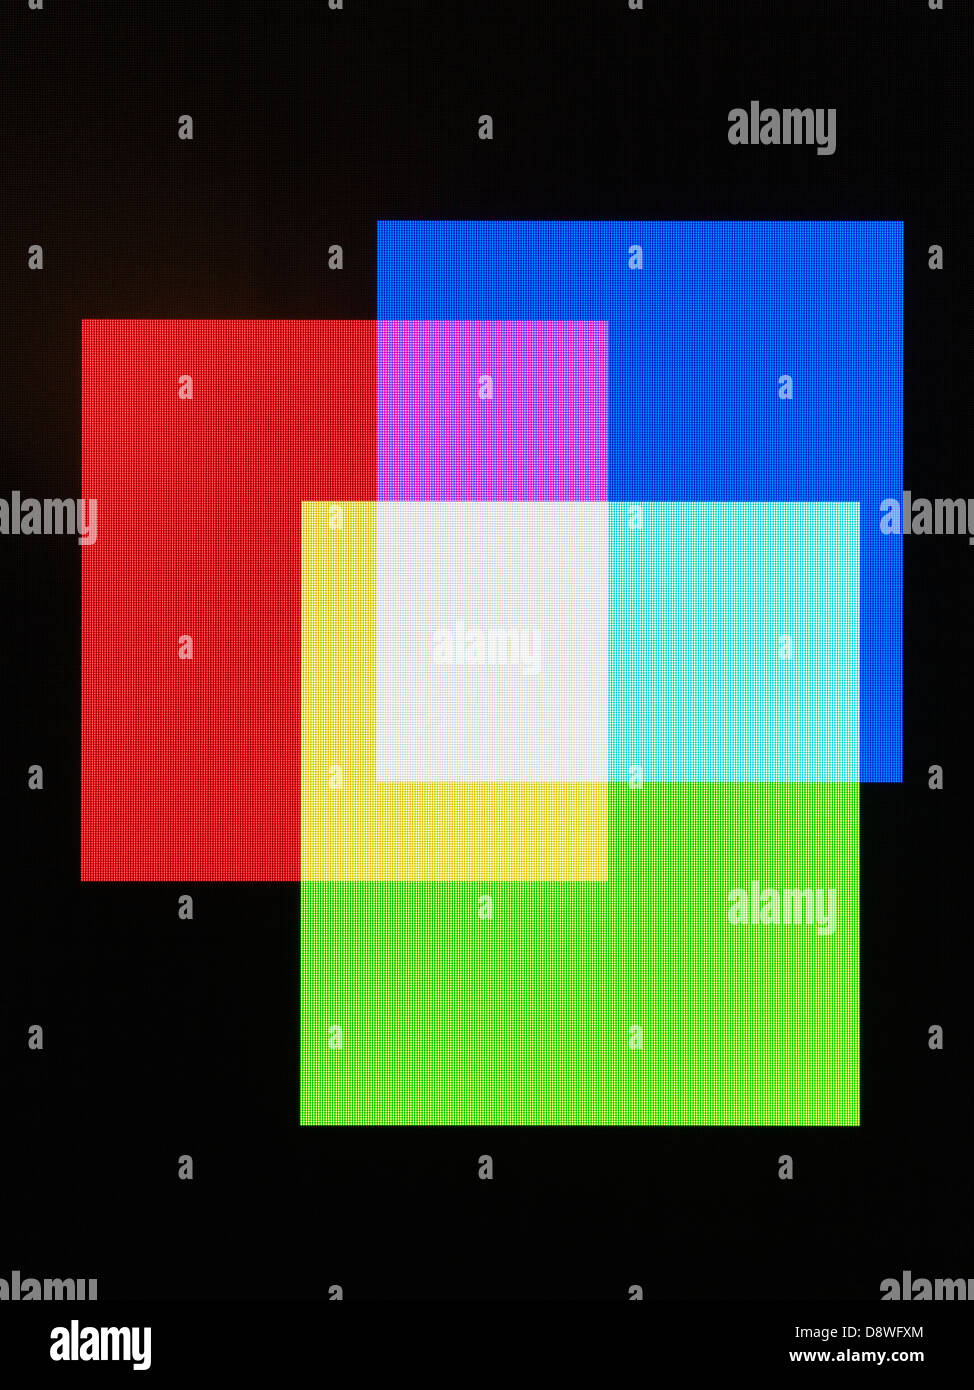 Imagen Digital de coloridas plazas en la pantalla de ordenador Foto de stock